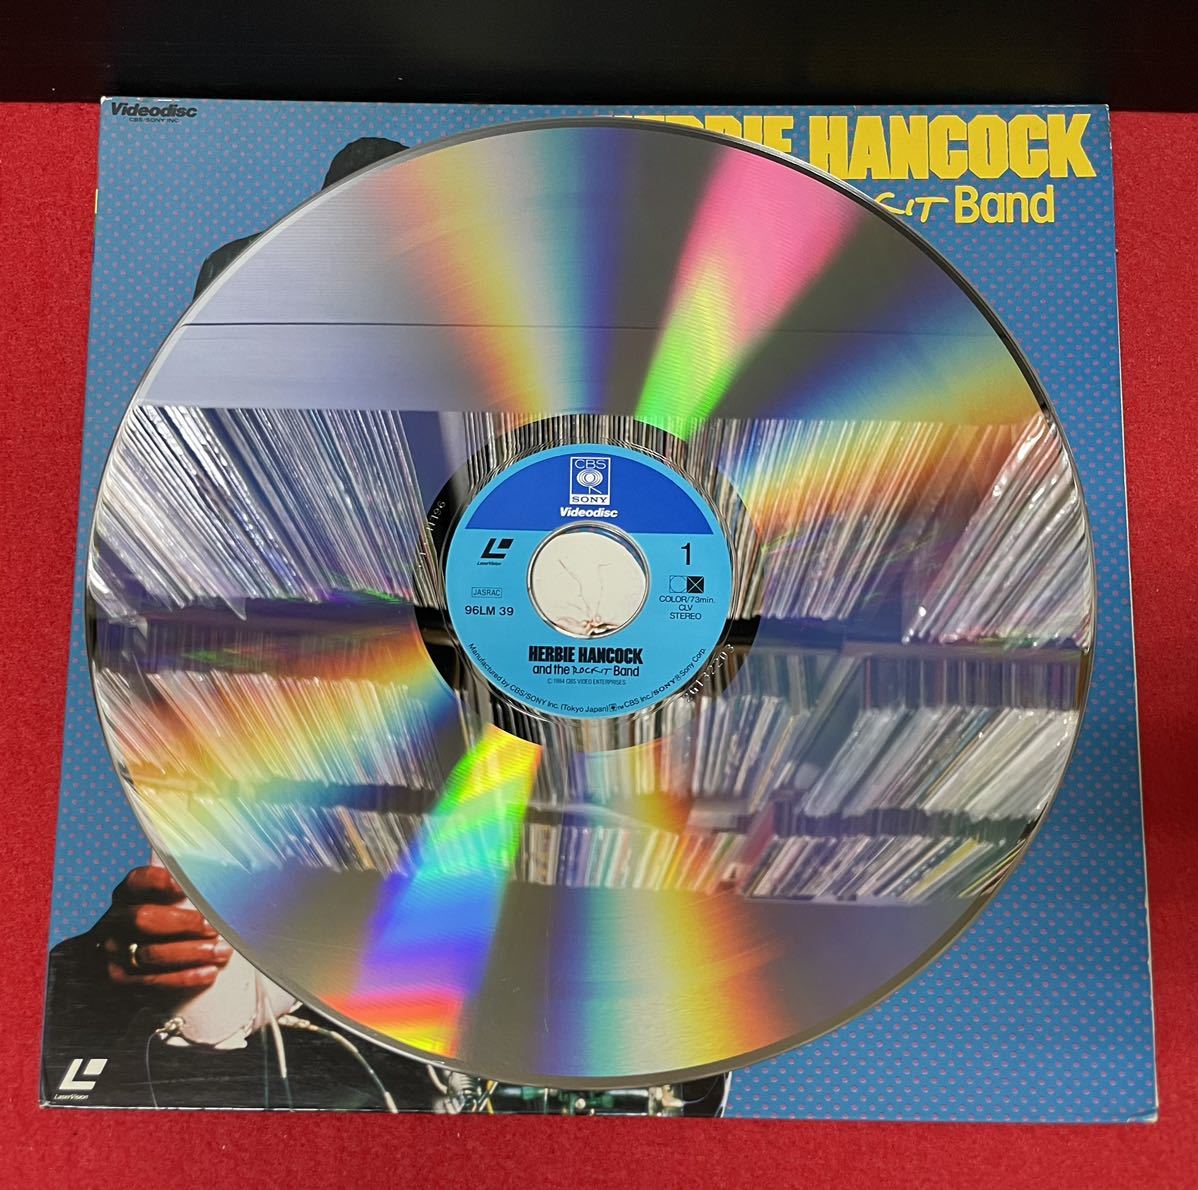 LD盤 Herbie Hancock And The Rockit Band レーザーディスク12inchサイズその他にもプロモーション盤 レア盤 人気レコード 多数出品。_画像5